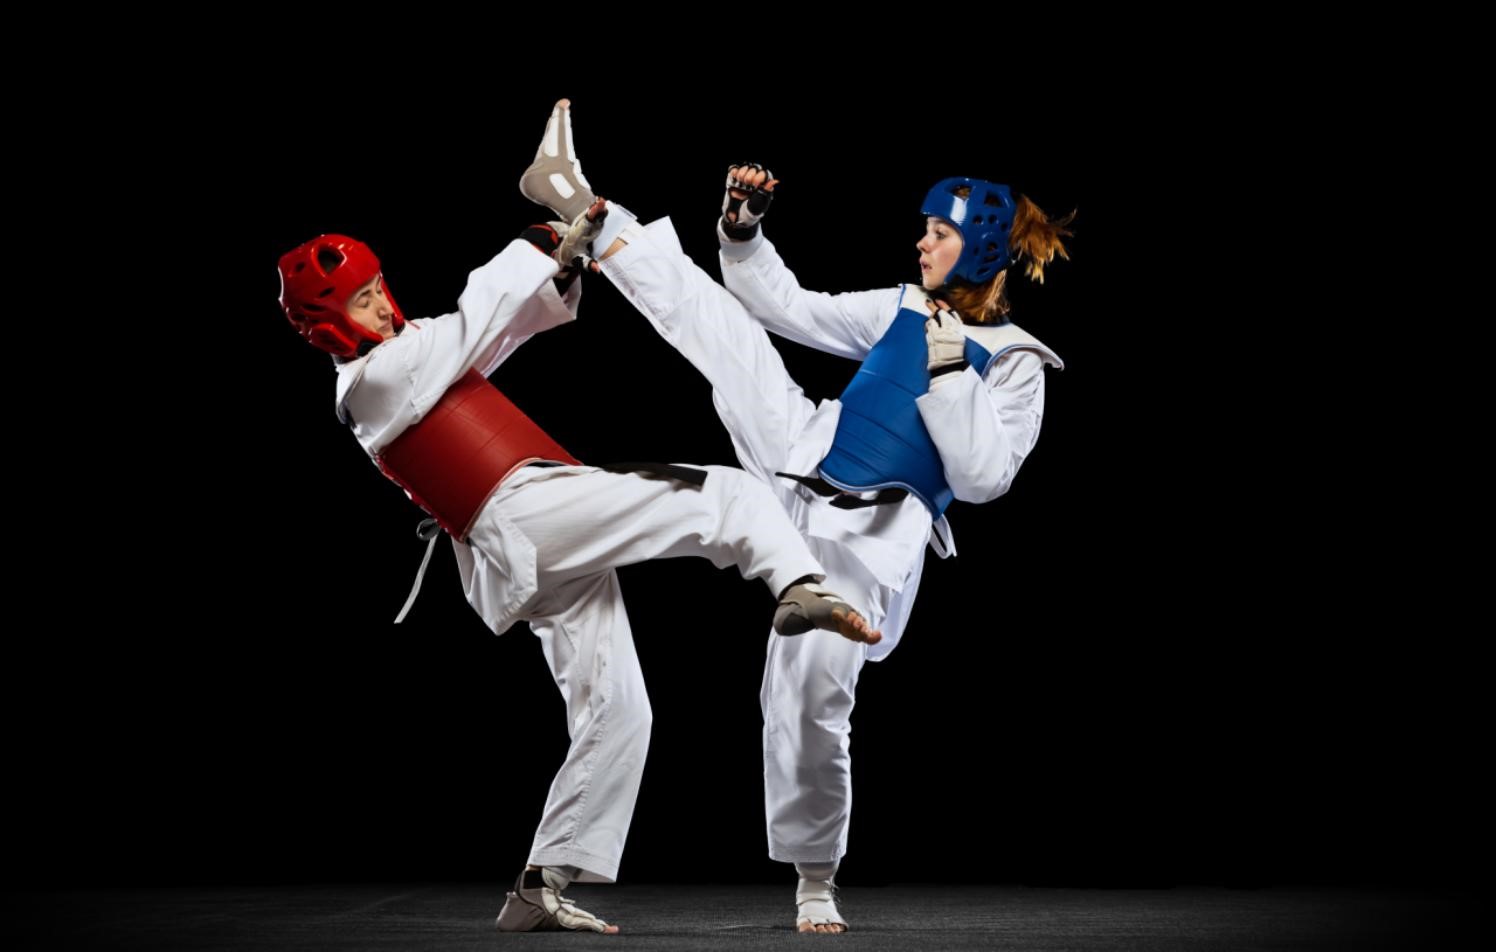 Adidas Taekwondo Uniform